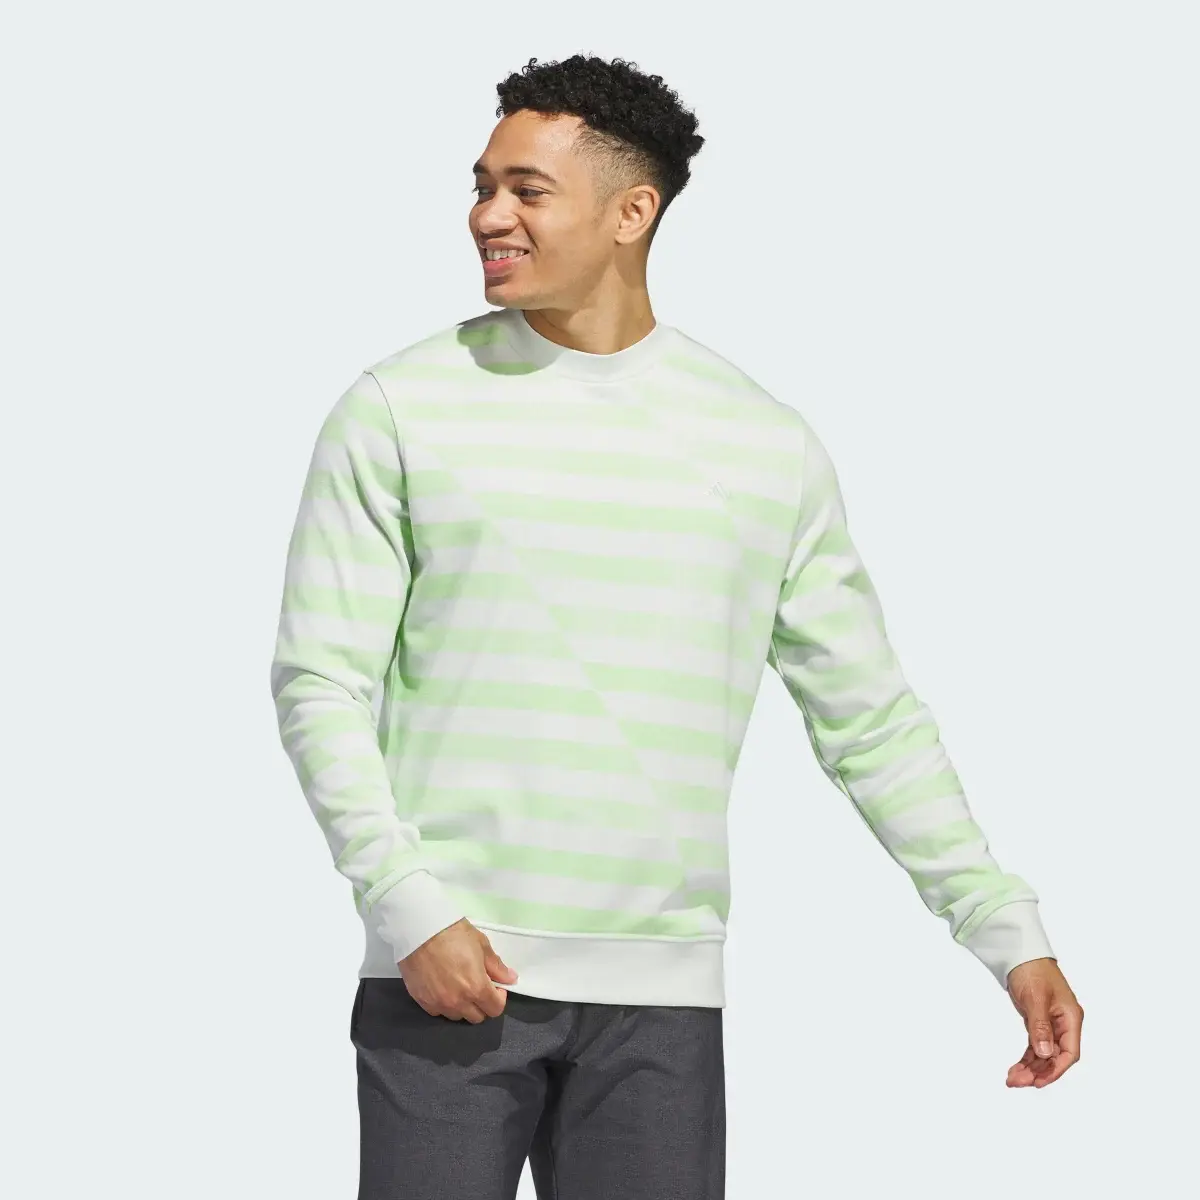 Adidas Sweatshirt Ultimate365. 2